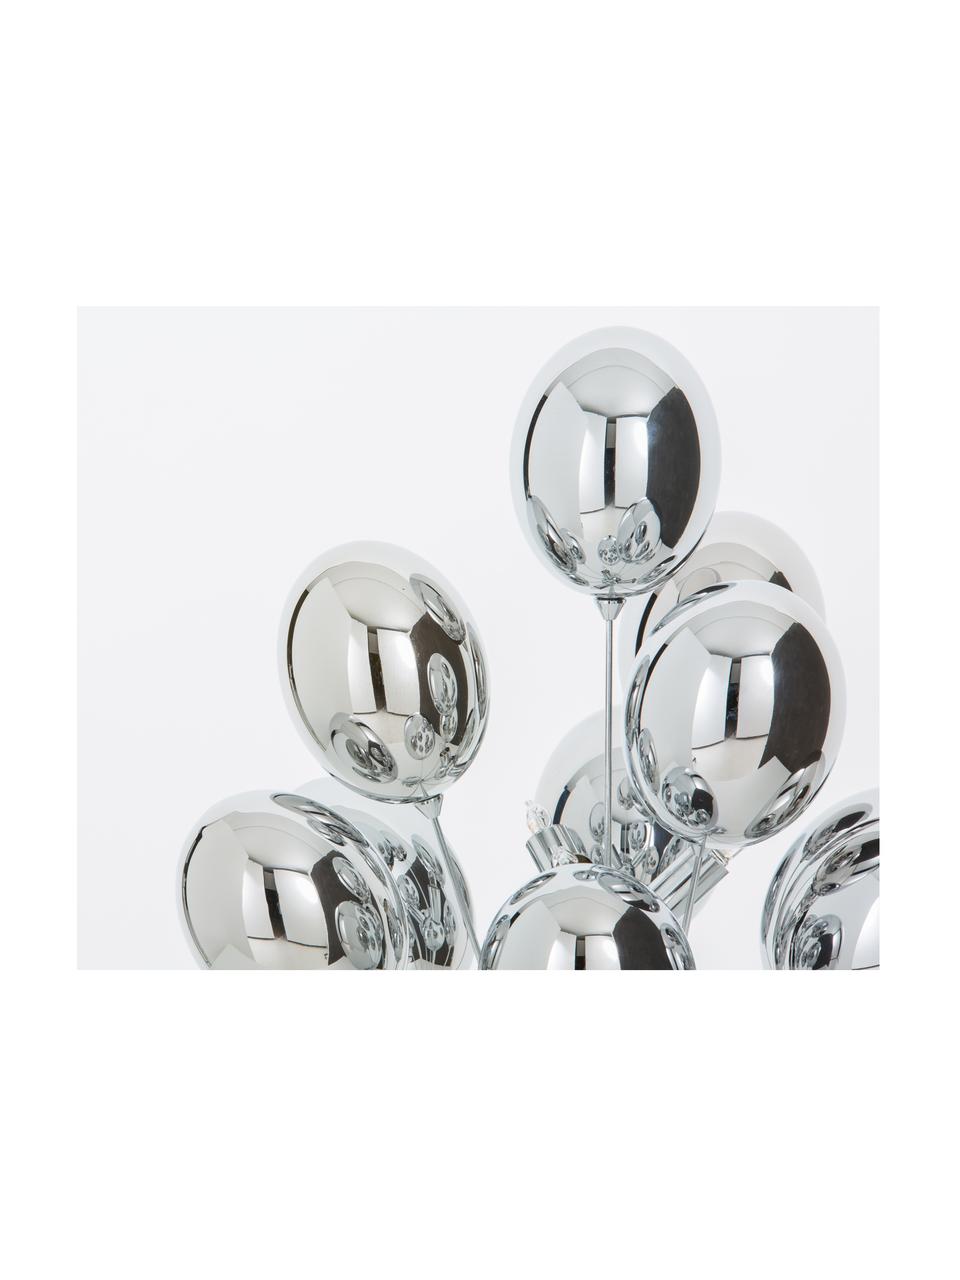 Lampa stołowa Balloons, Stelaż: stal chromowana, Odcienie srebrnego, S 36 x W 68 cm